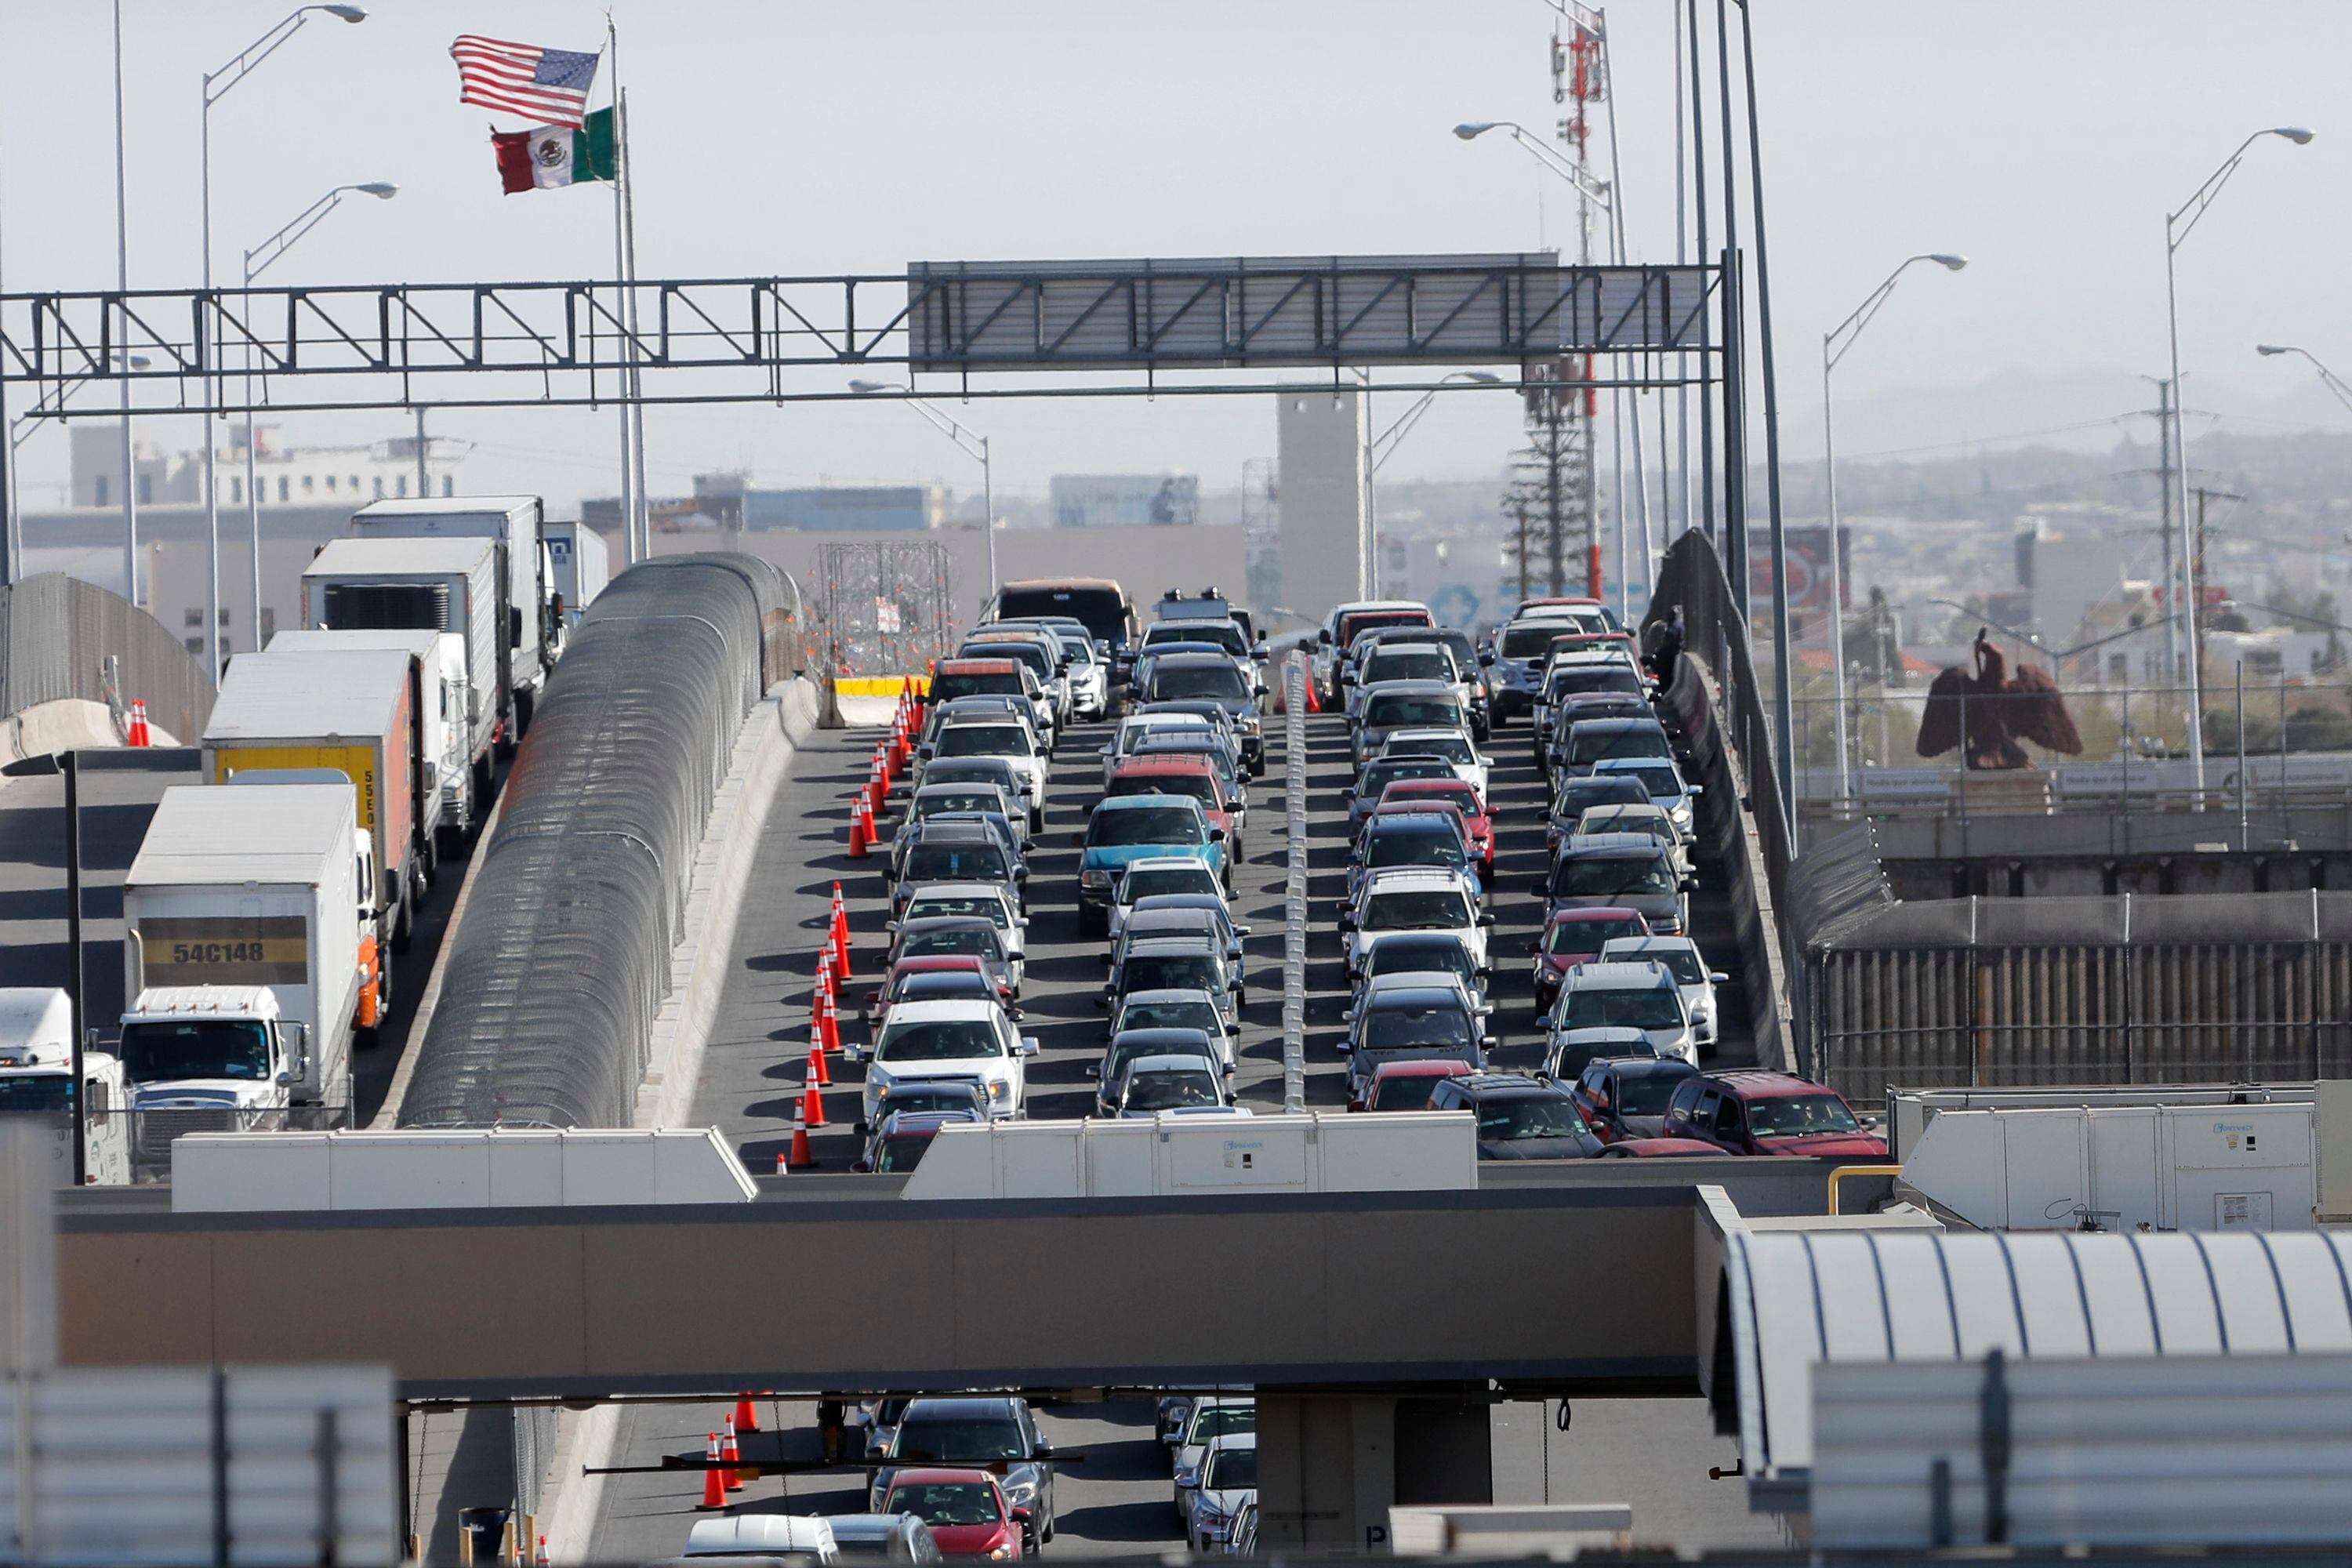 En esta imagen de archivo, autos y camiones esperan en filas para entrar a Estados Unidos desde México, en el cruce fronterizo de El Paso, Texas, el 29 de marzo de 2019. (AP Foto/Gerald Herbert, archivo)